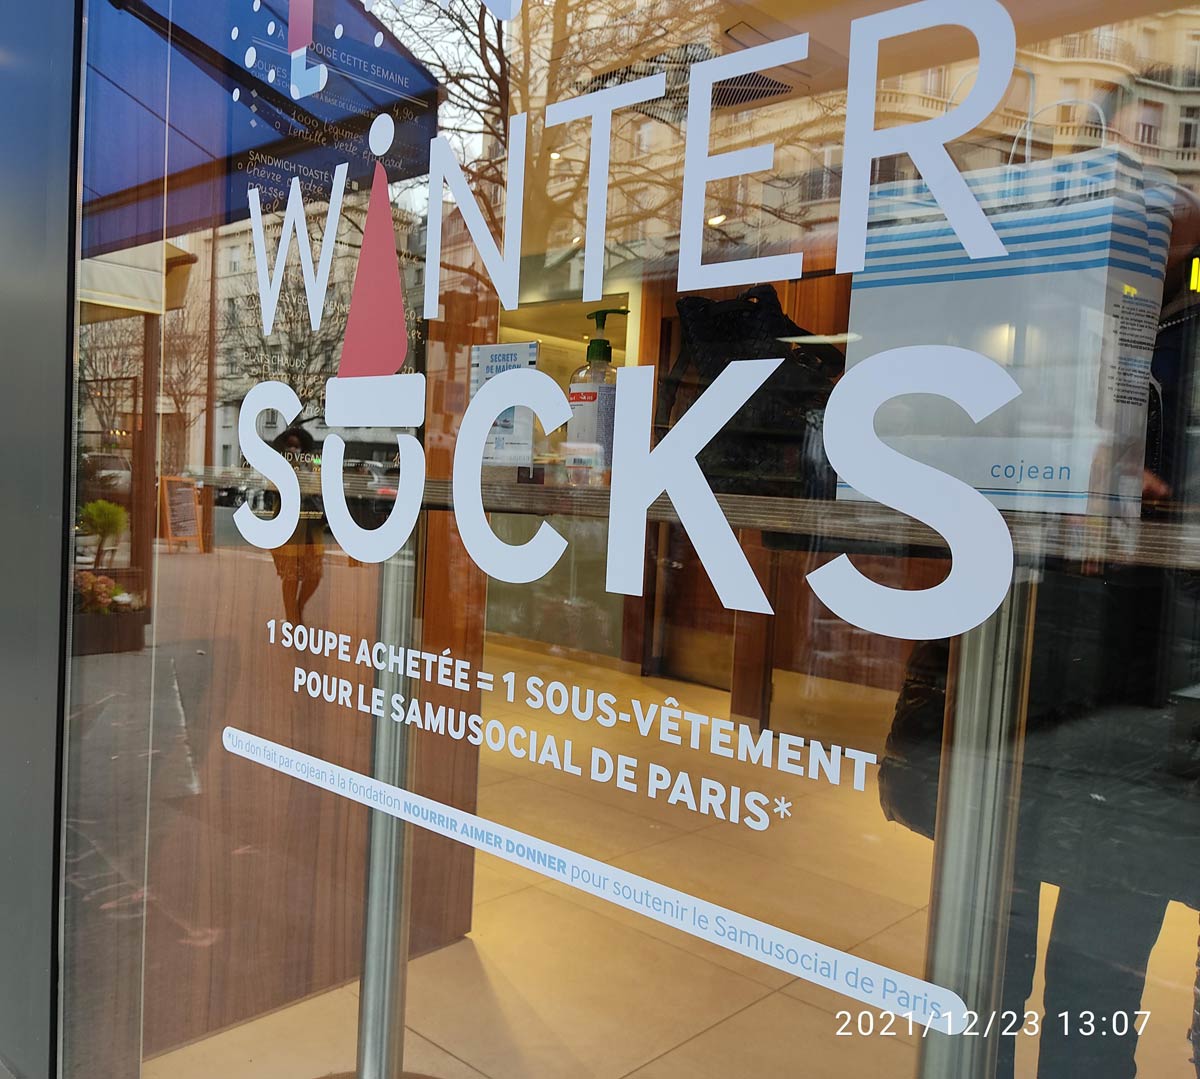 Winter Sucks in Paris